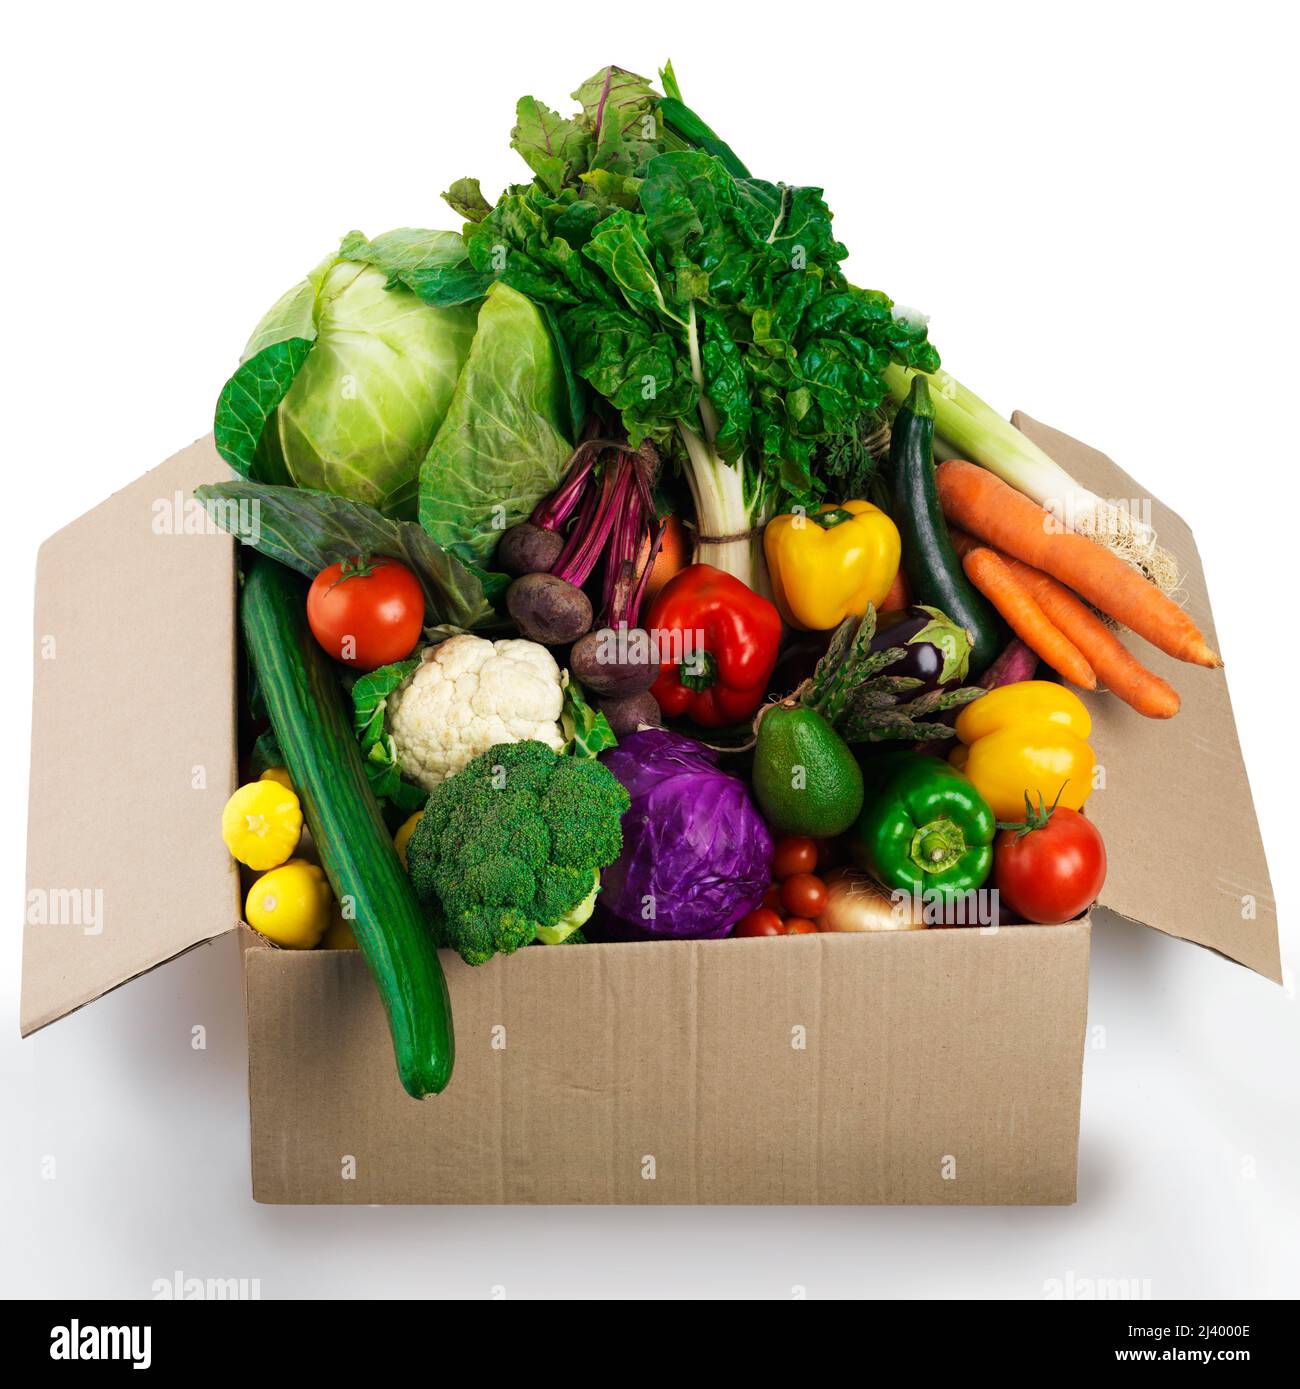 Holen Sie sich Ihre Schachtel mit organischer Güte. Studioaufnahme eines Pappkartons, gefüllt mit Obst und Gemüse. Stockfoto